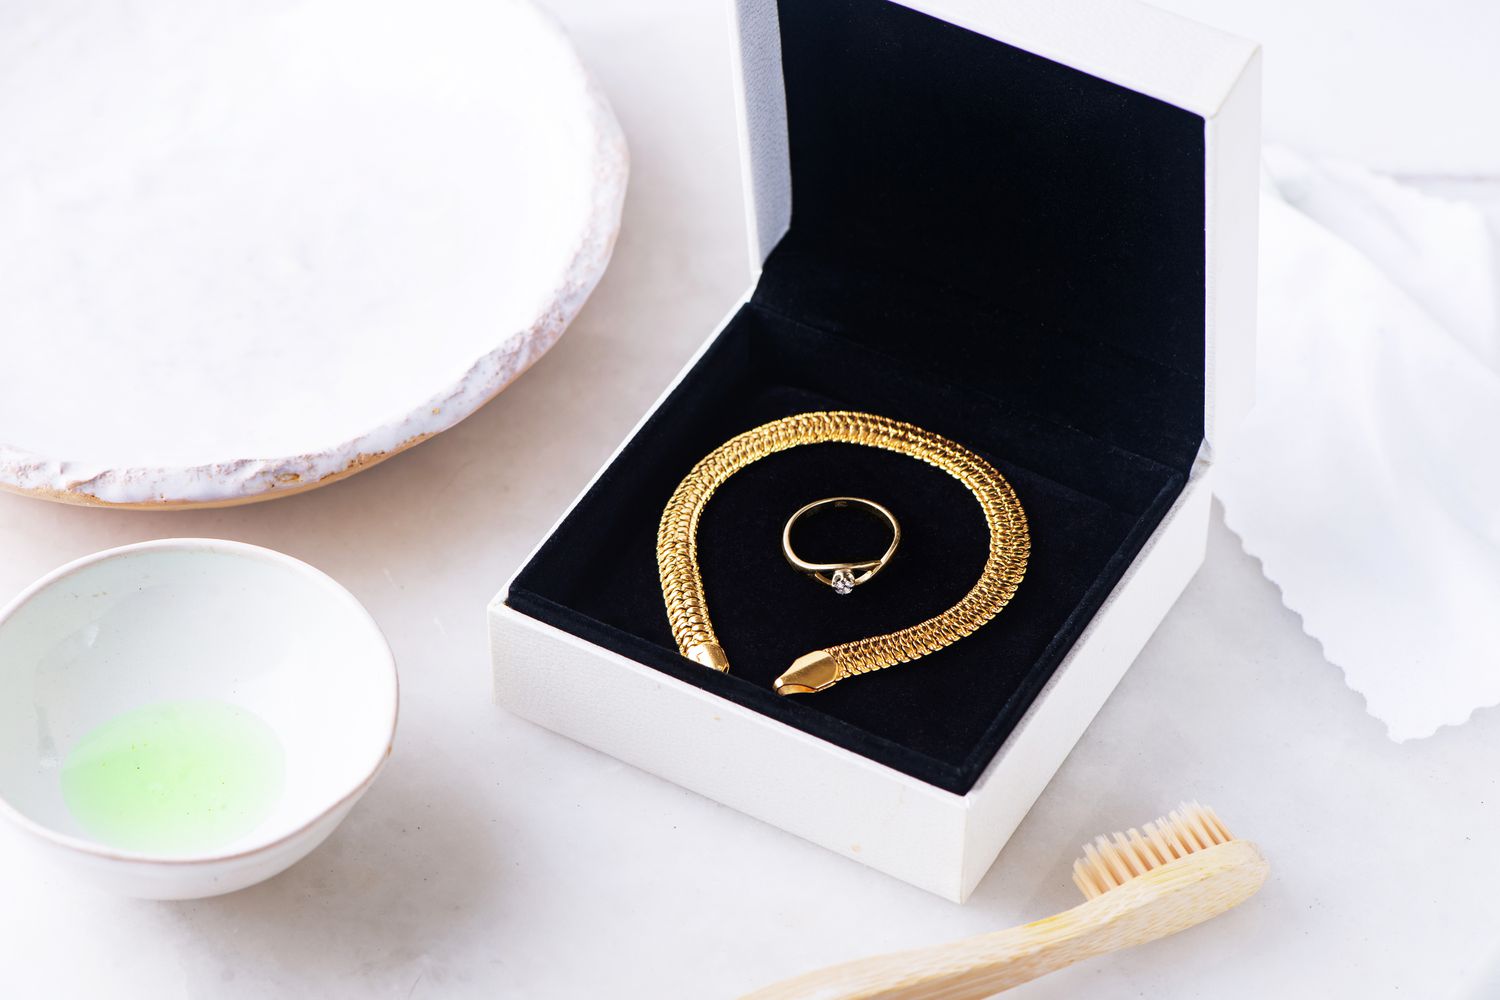 Goldarmband und -ring in schwarzer Schachtel neben Zahnbürste und Geschirrspülmittel